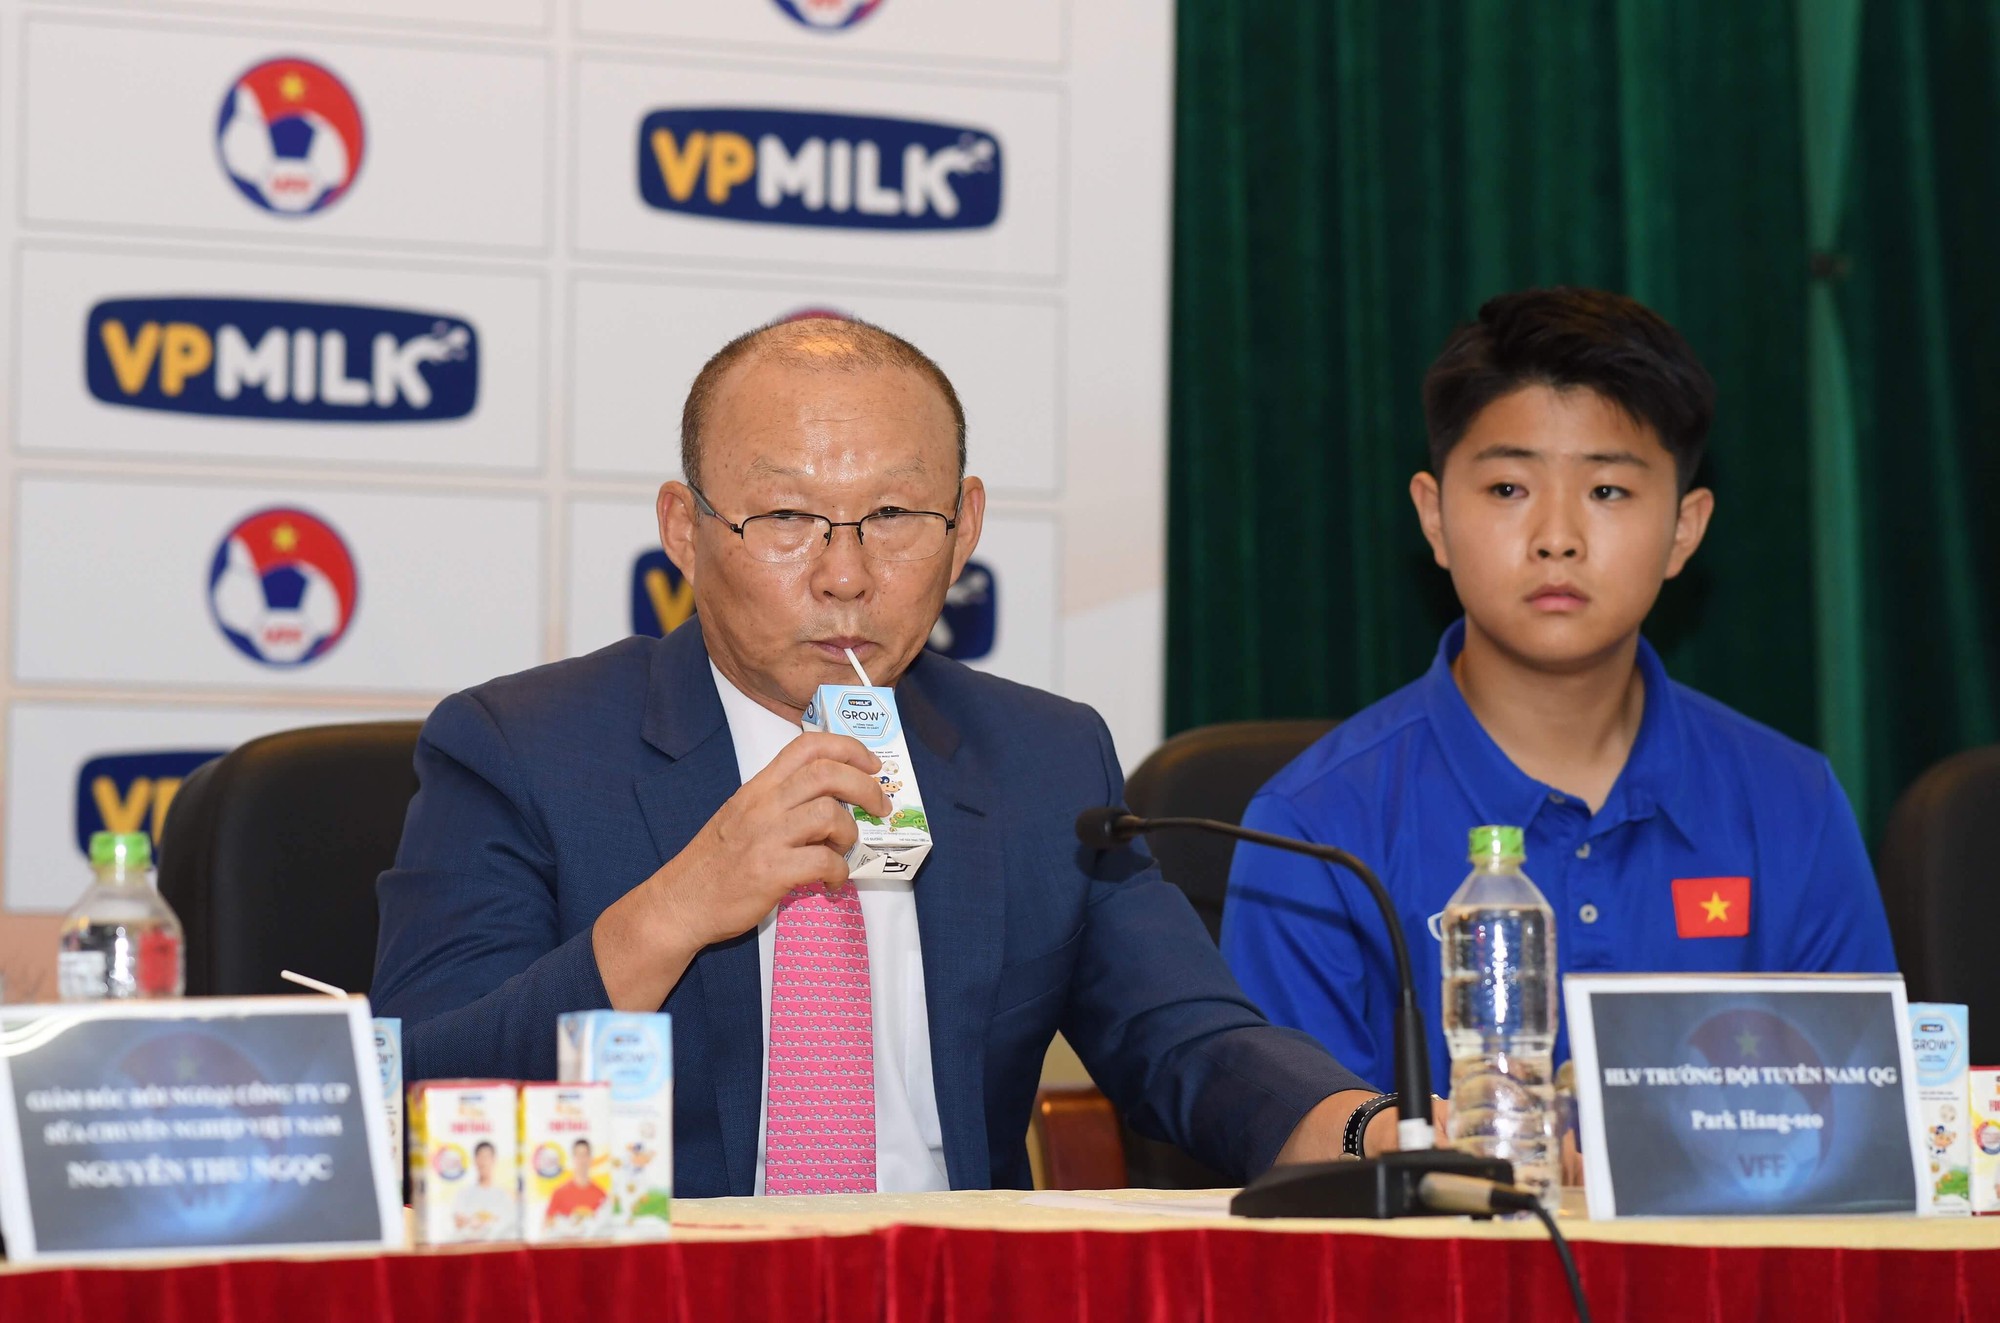 Thầy Park Hang-seo được lãnh đạo VP Milk cổ vũ bằng thư tay